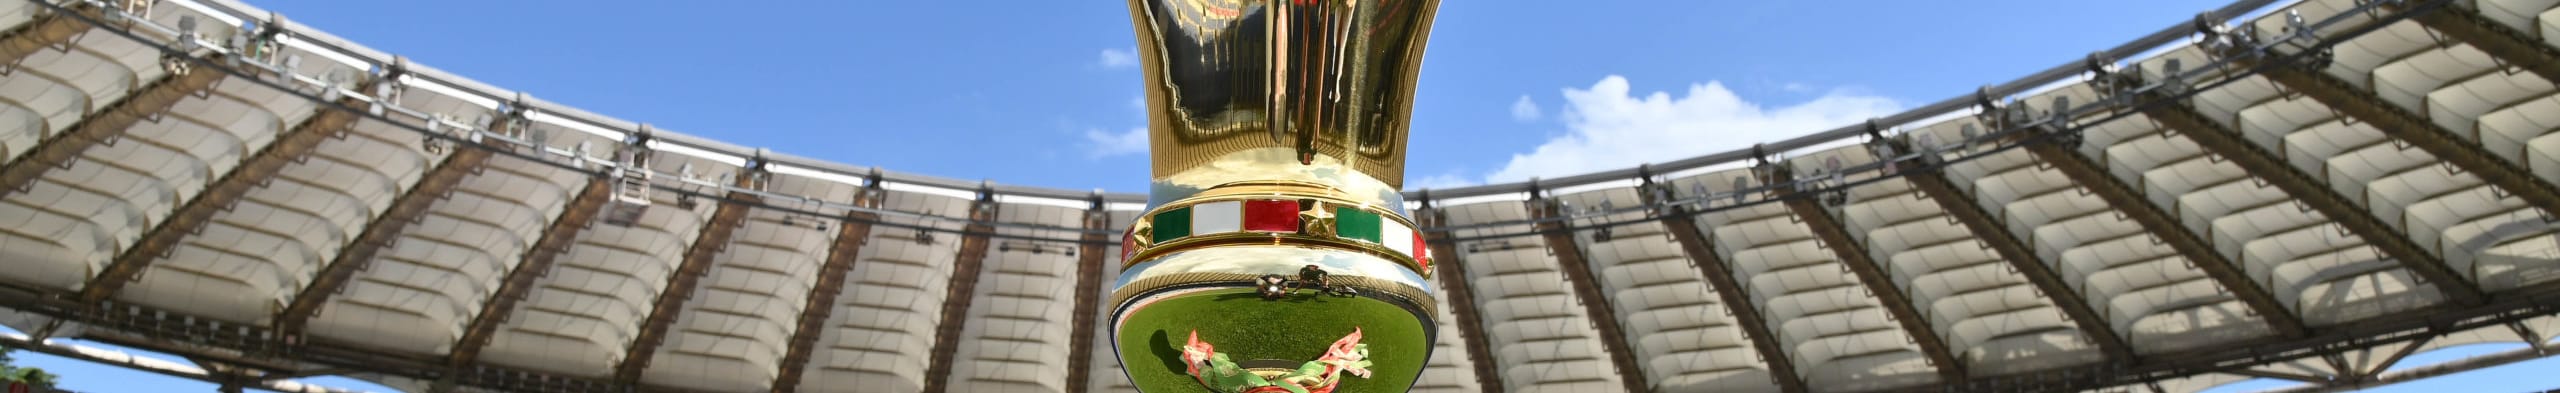 Νάπολι - Γιουβέντους: Τα φώτα στον τελικό Coppa Italia!